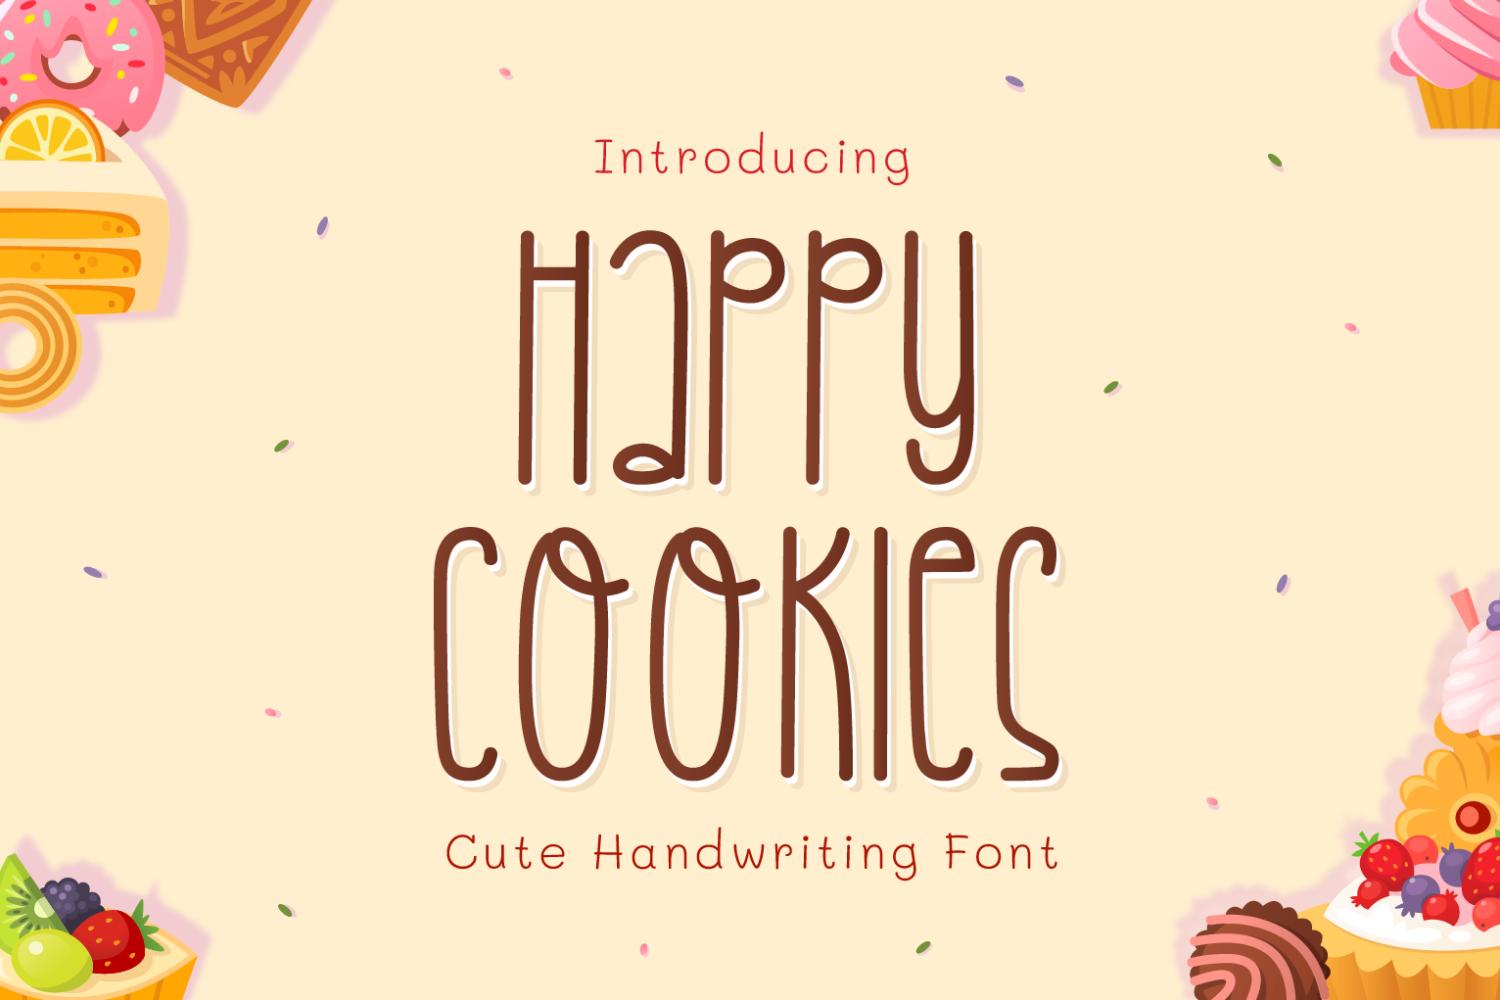 Happy Cookies Font